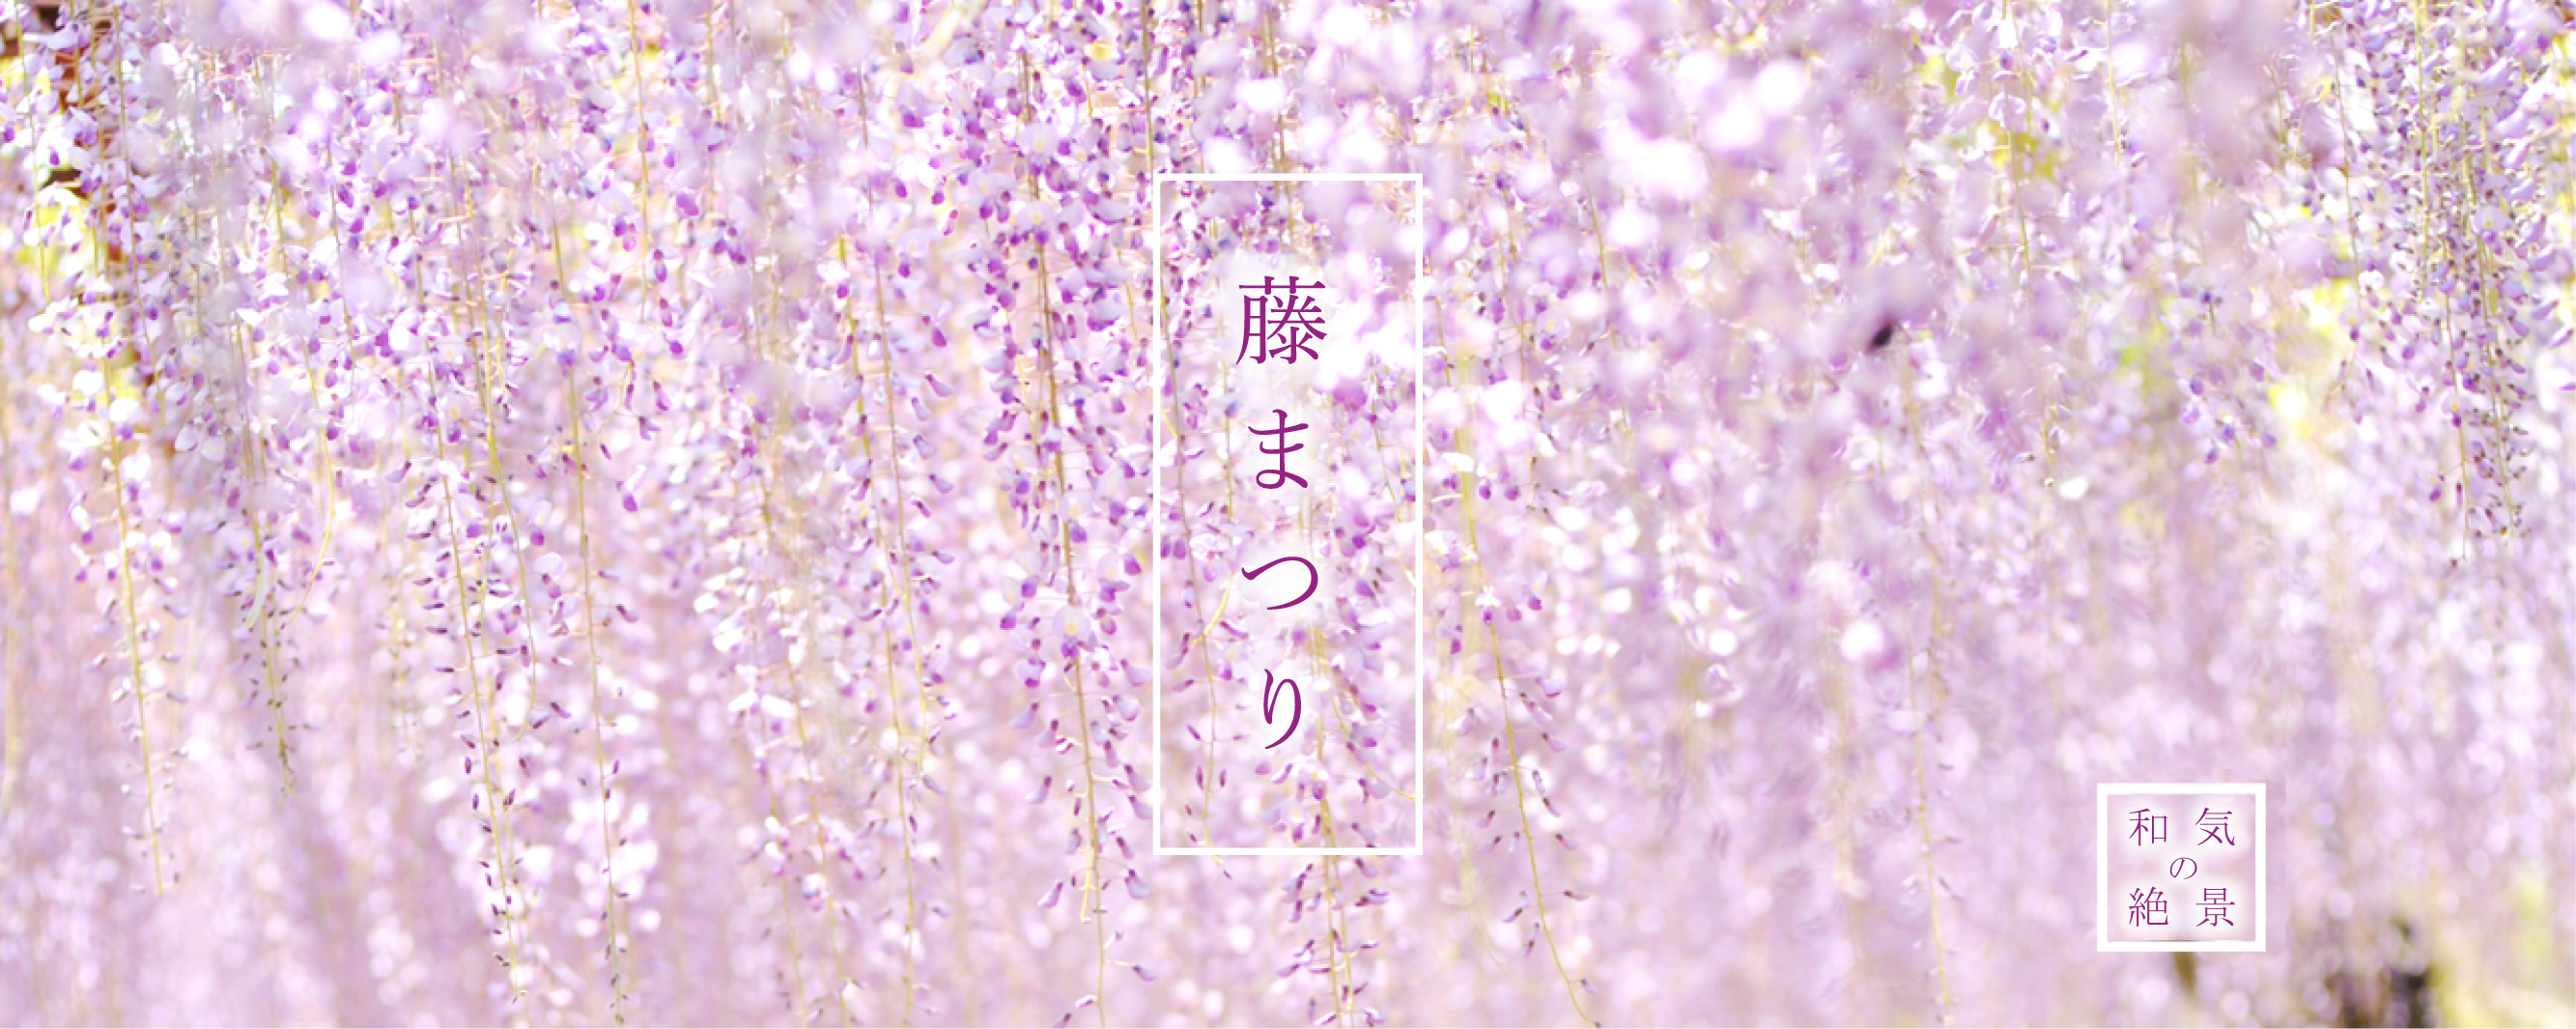 藤まつり 和気の絶景（白と紫色の藤の花をアップで撮影した写真）